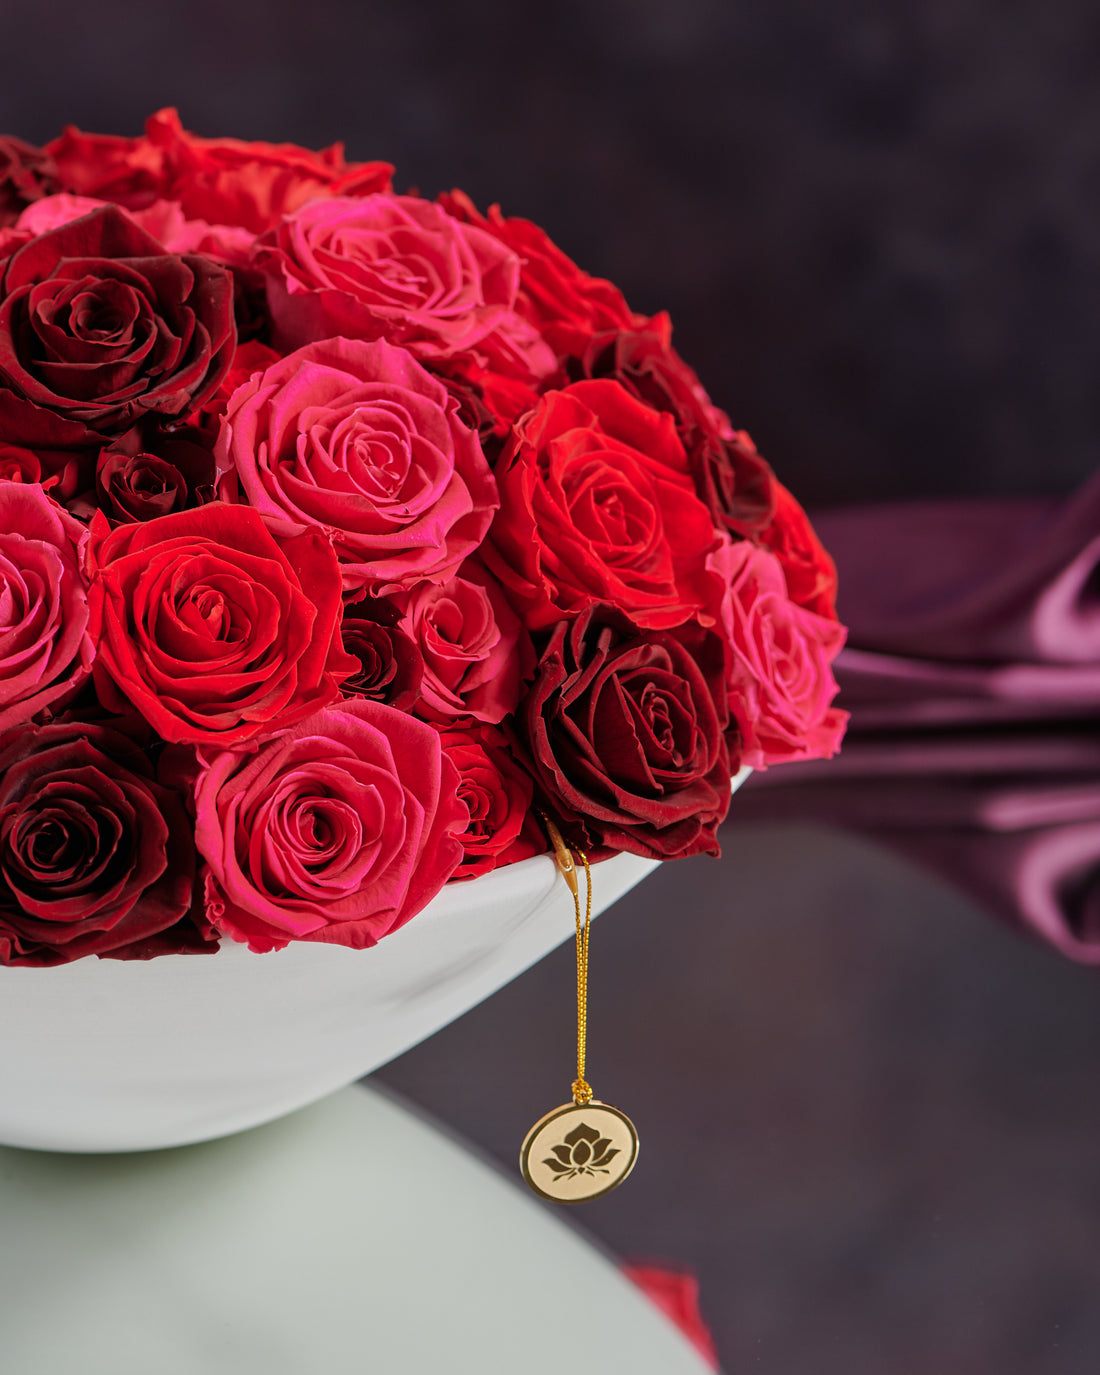 Grandiose Roses by La Fleur Lifetime Flowers